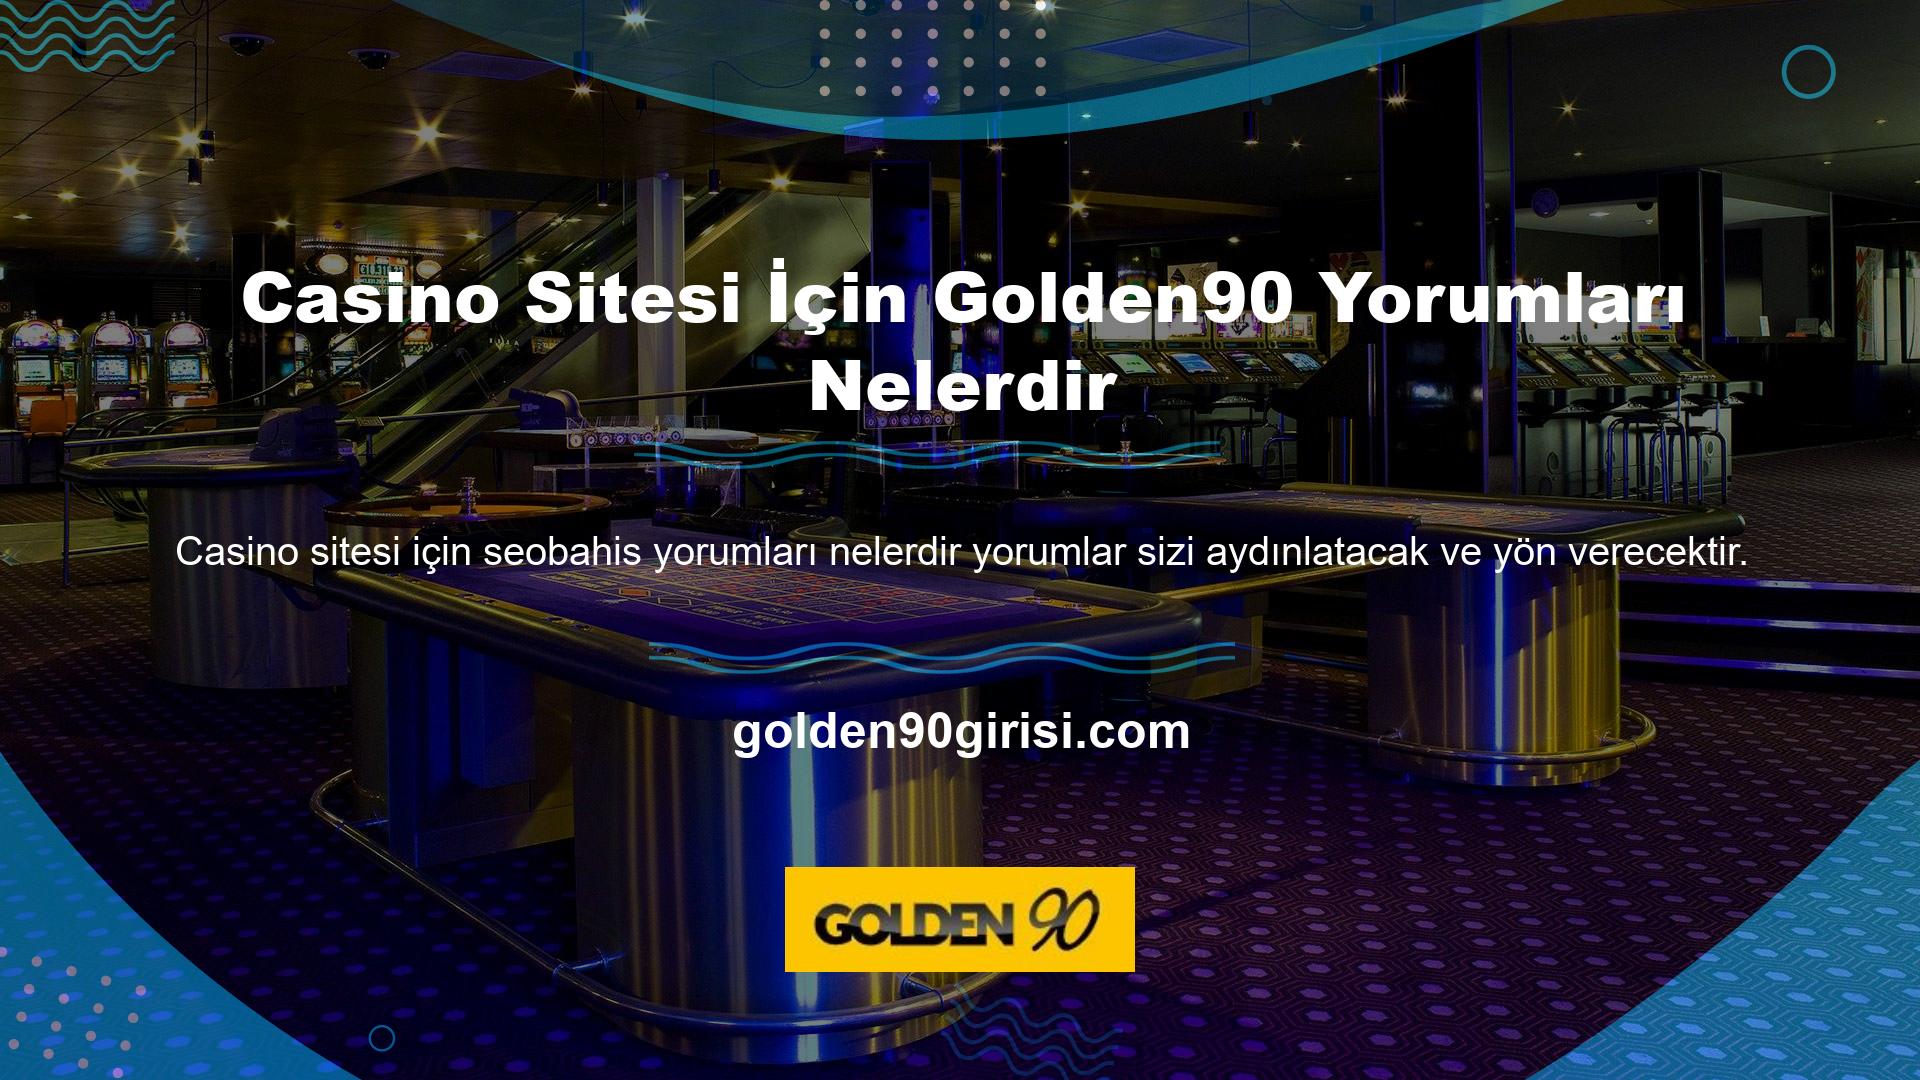 Golden90 nasıl değerlendiriyorsunuz? Casino web sitesi aracılığıyla derece veya deneyim